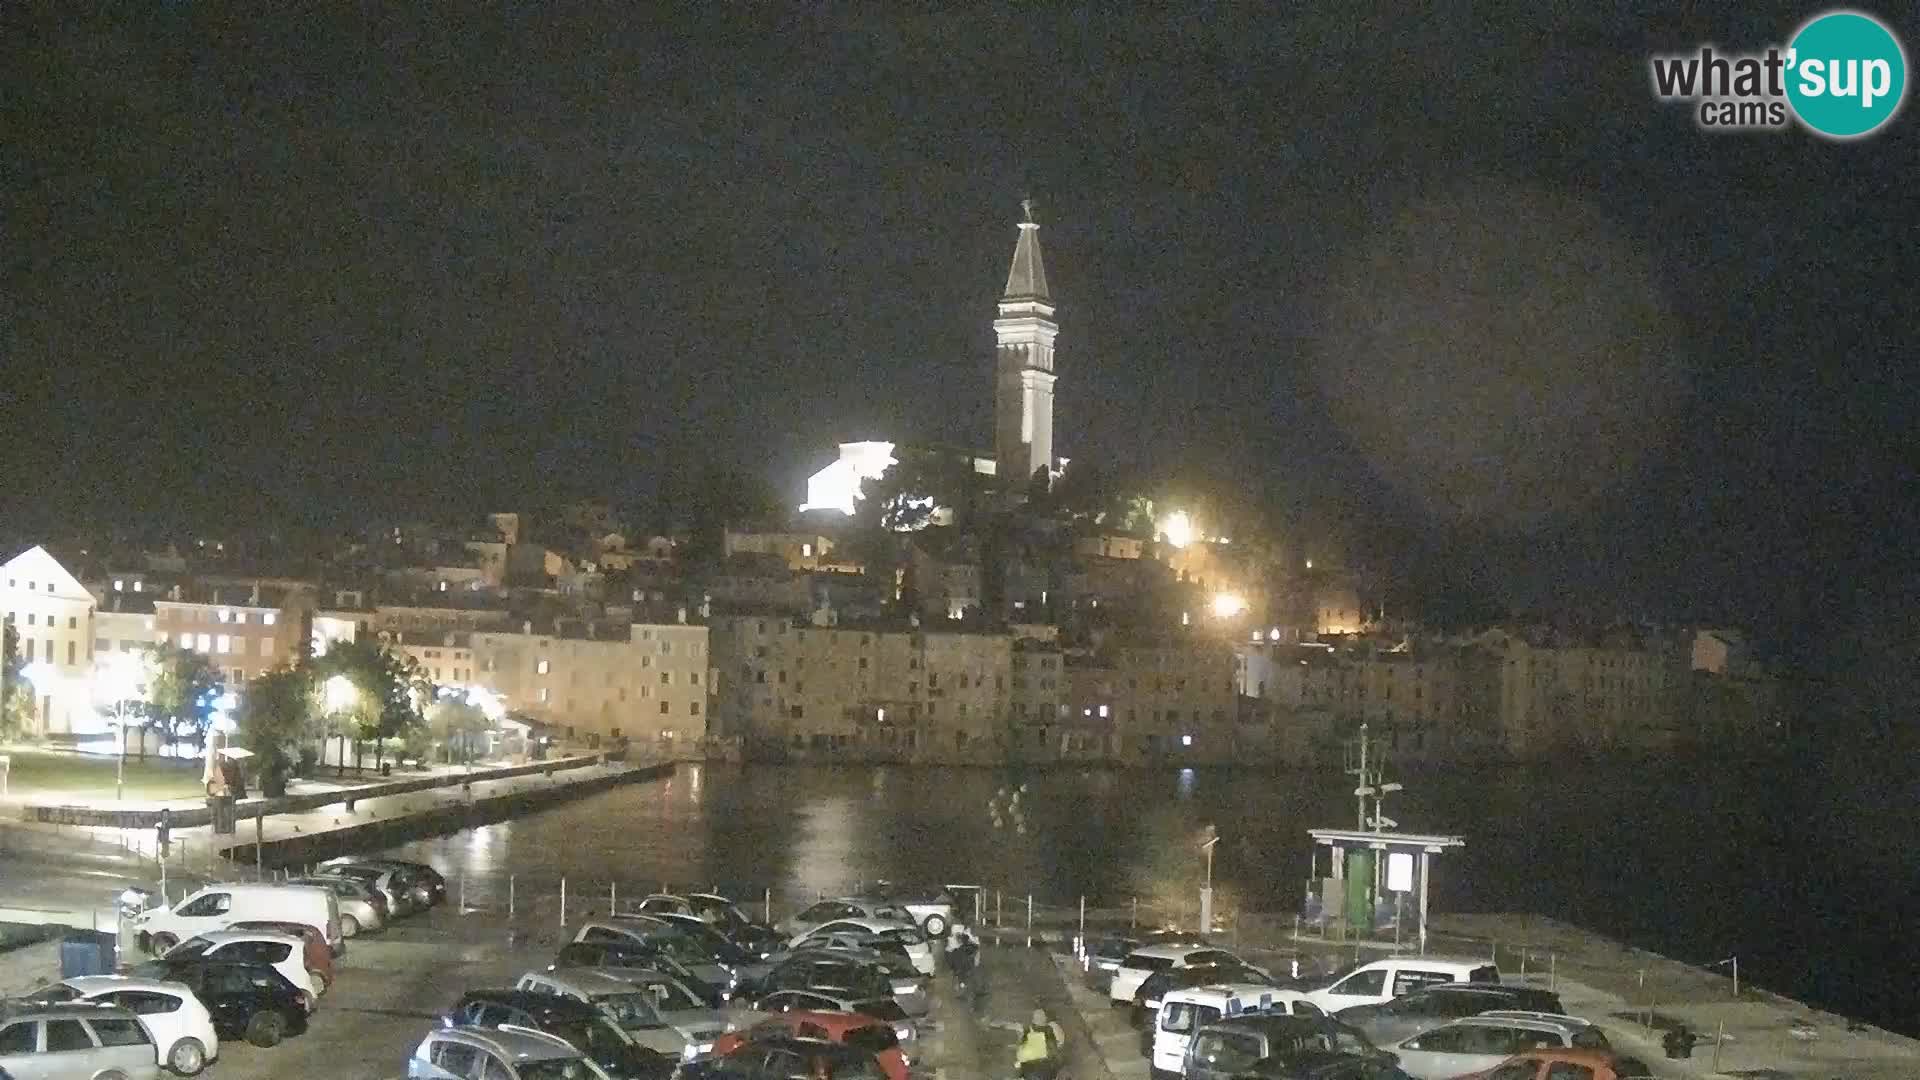 Webcam ROVIGNO Panorama della Città di Rovinj – Istria